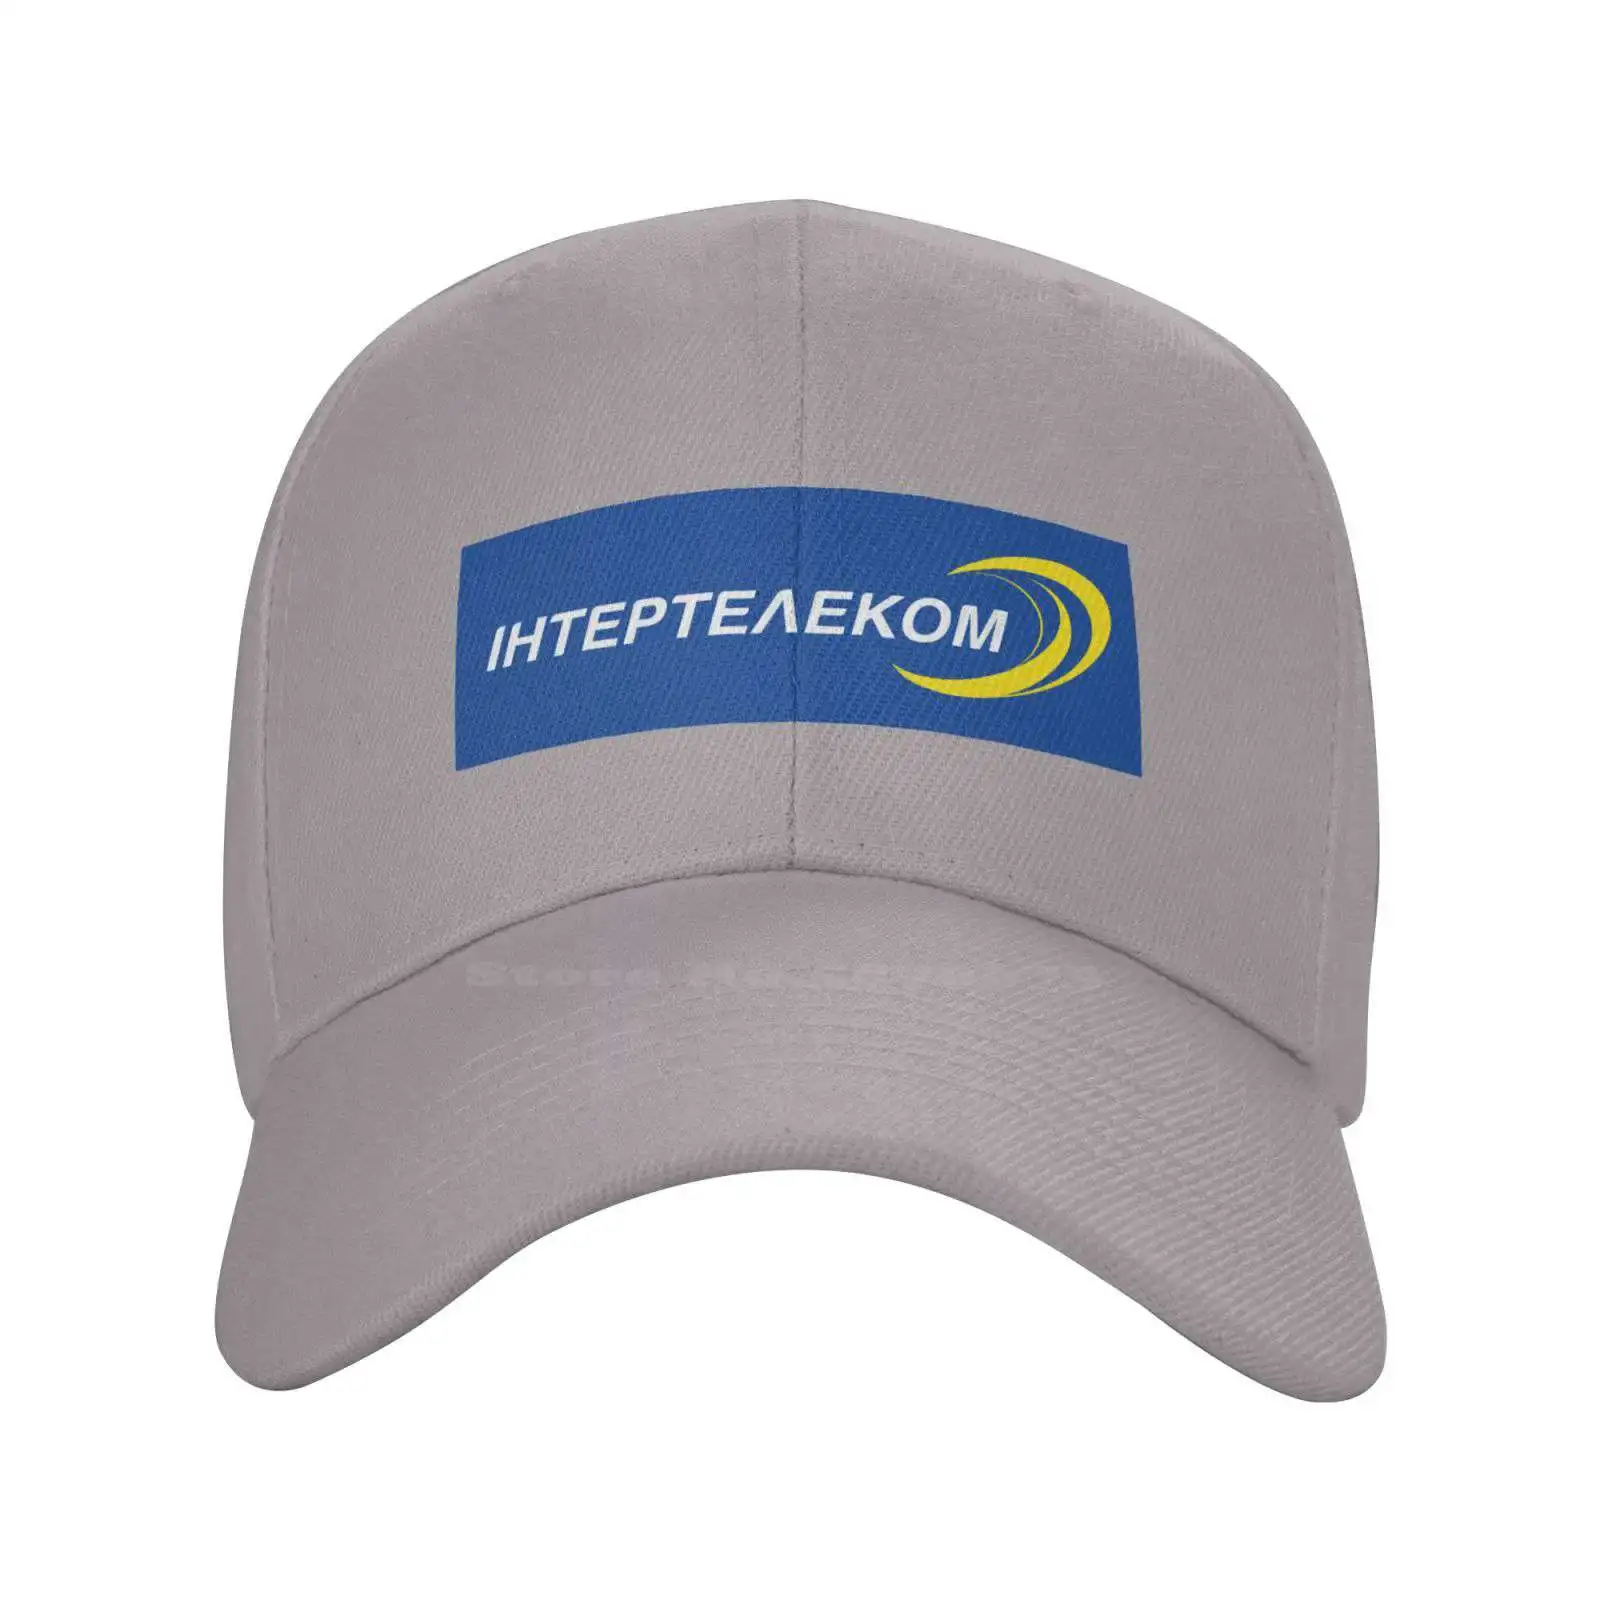 Модная качественная джинсовая кепка с логотипом Intertelecom CDMA, вязаная шапка, бейсболка